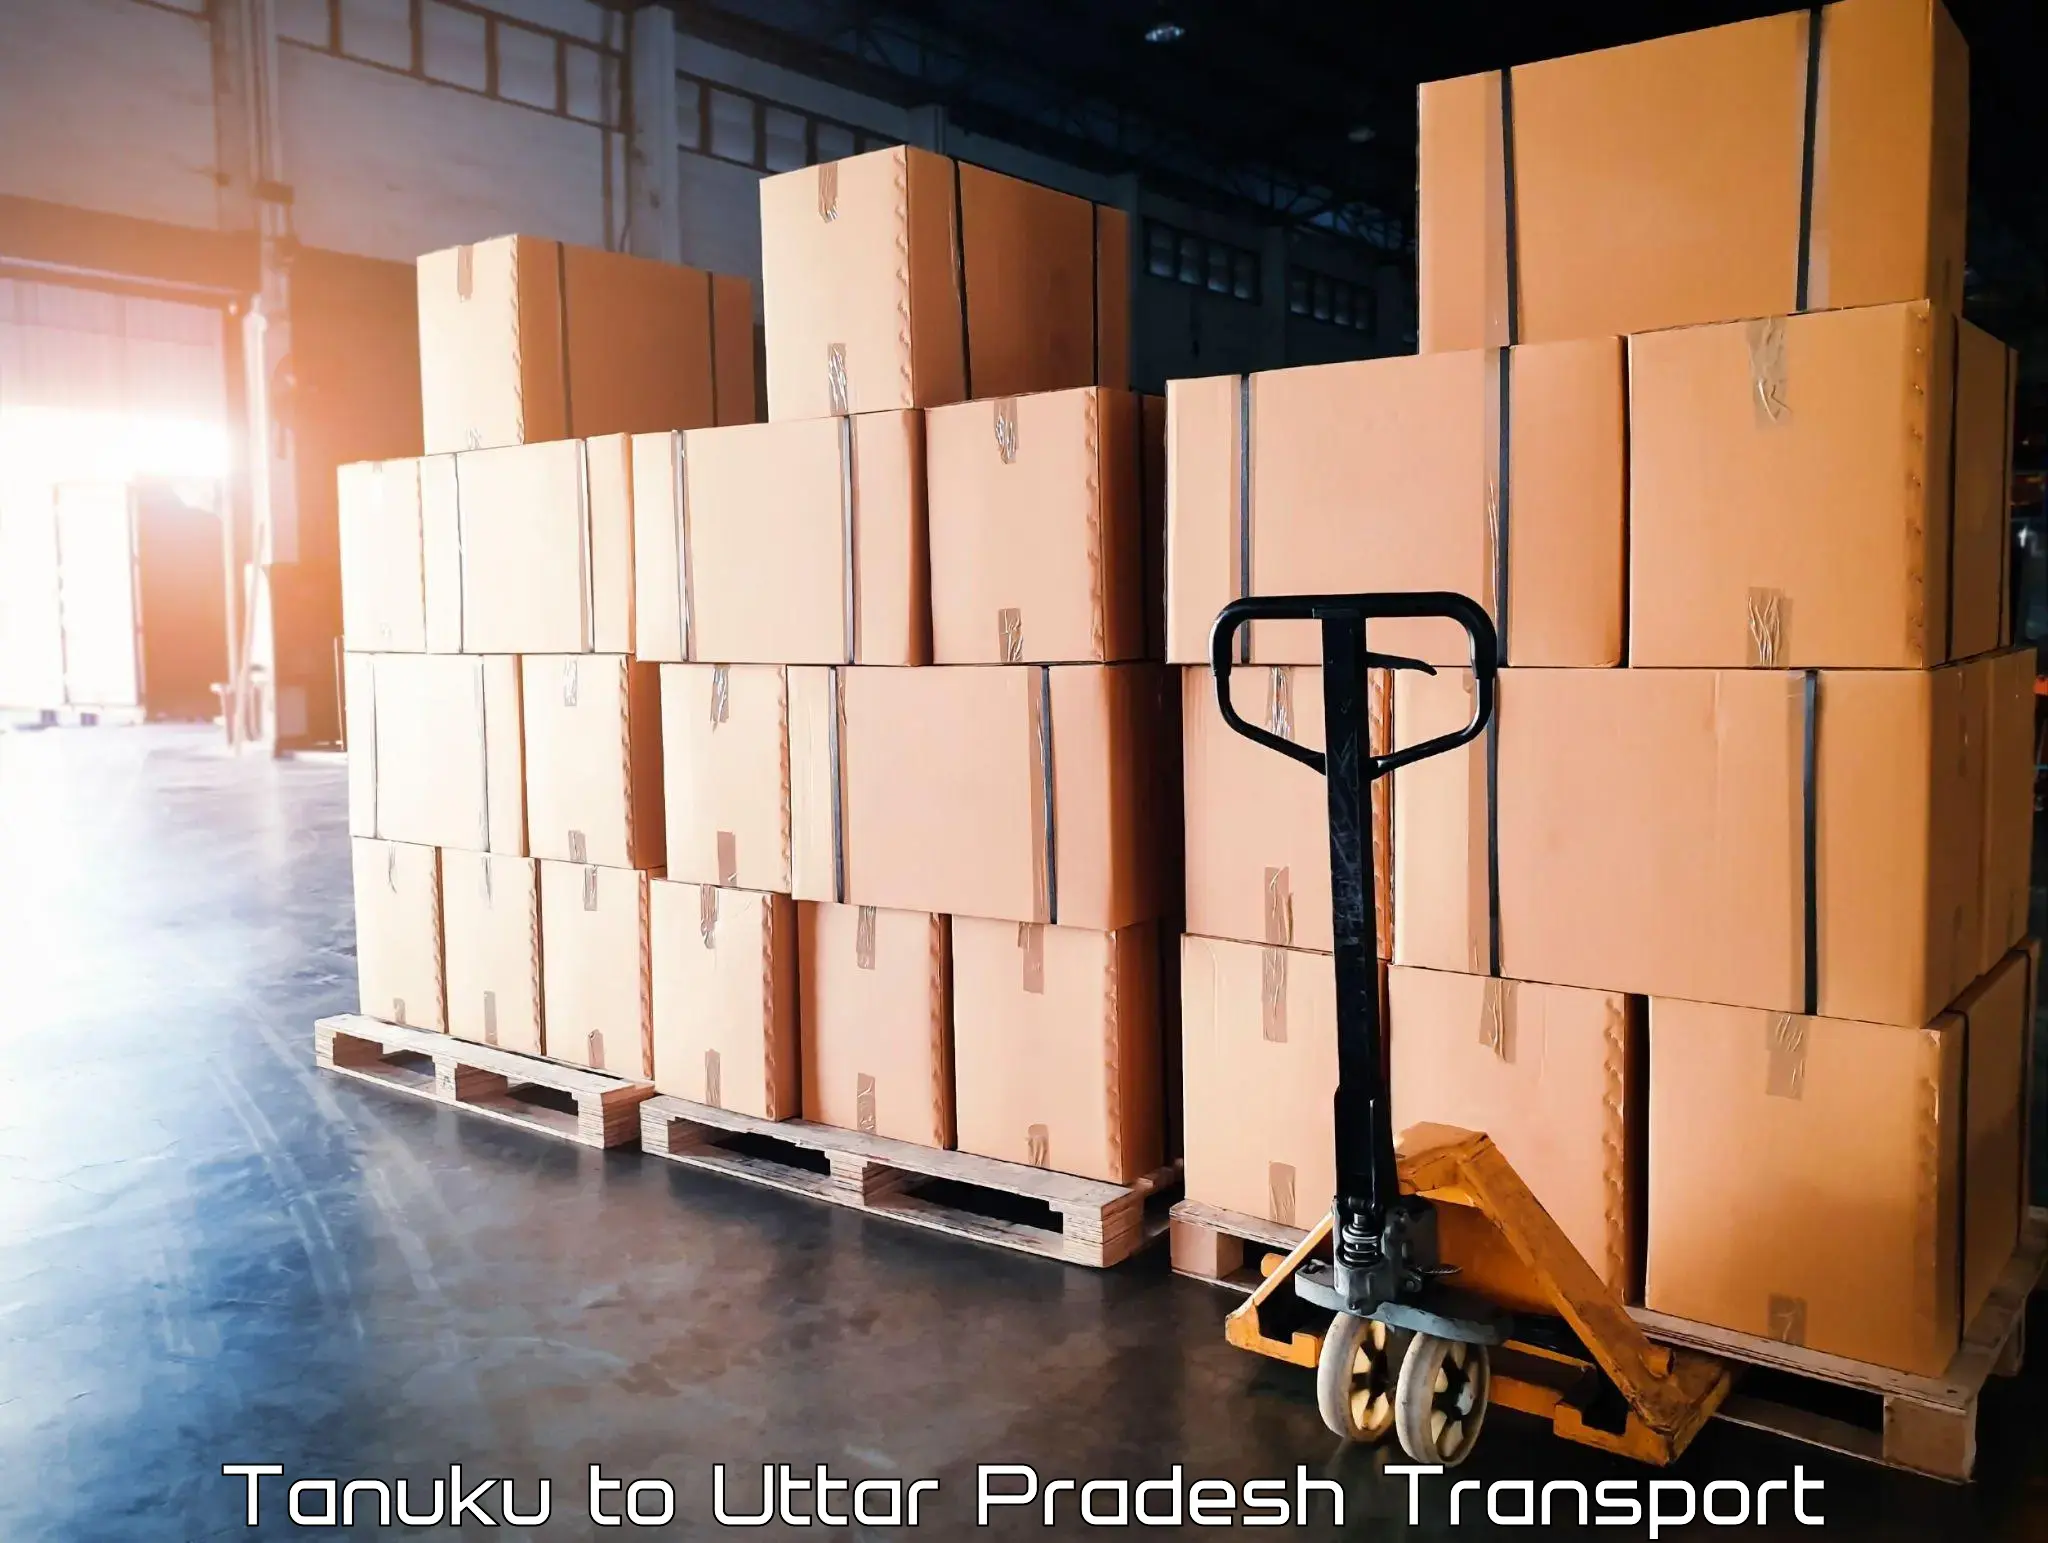 Transport in sharing Tanuku to Jalesar